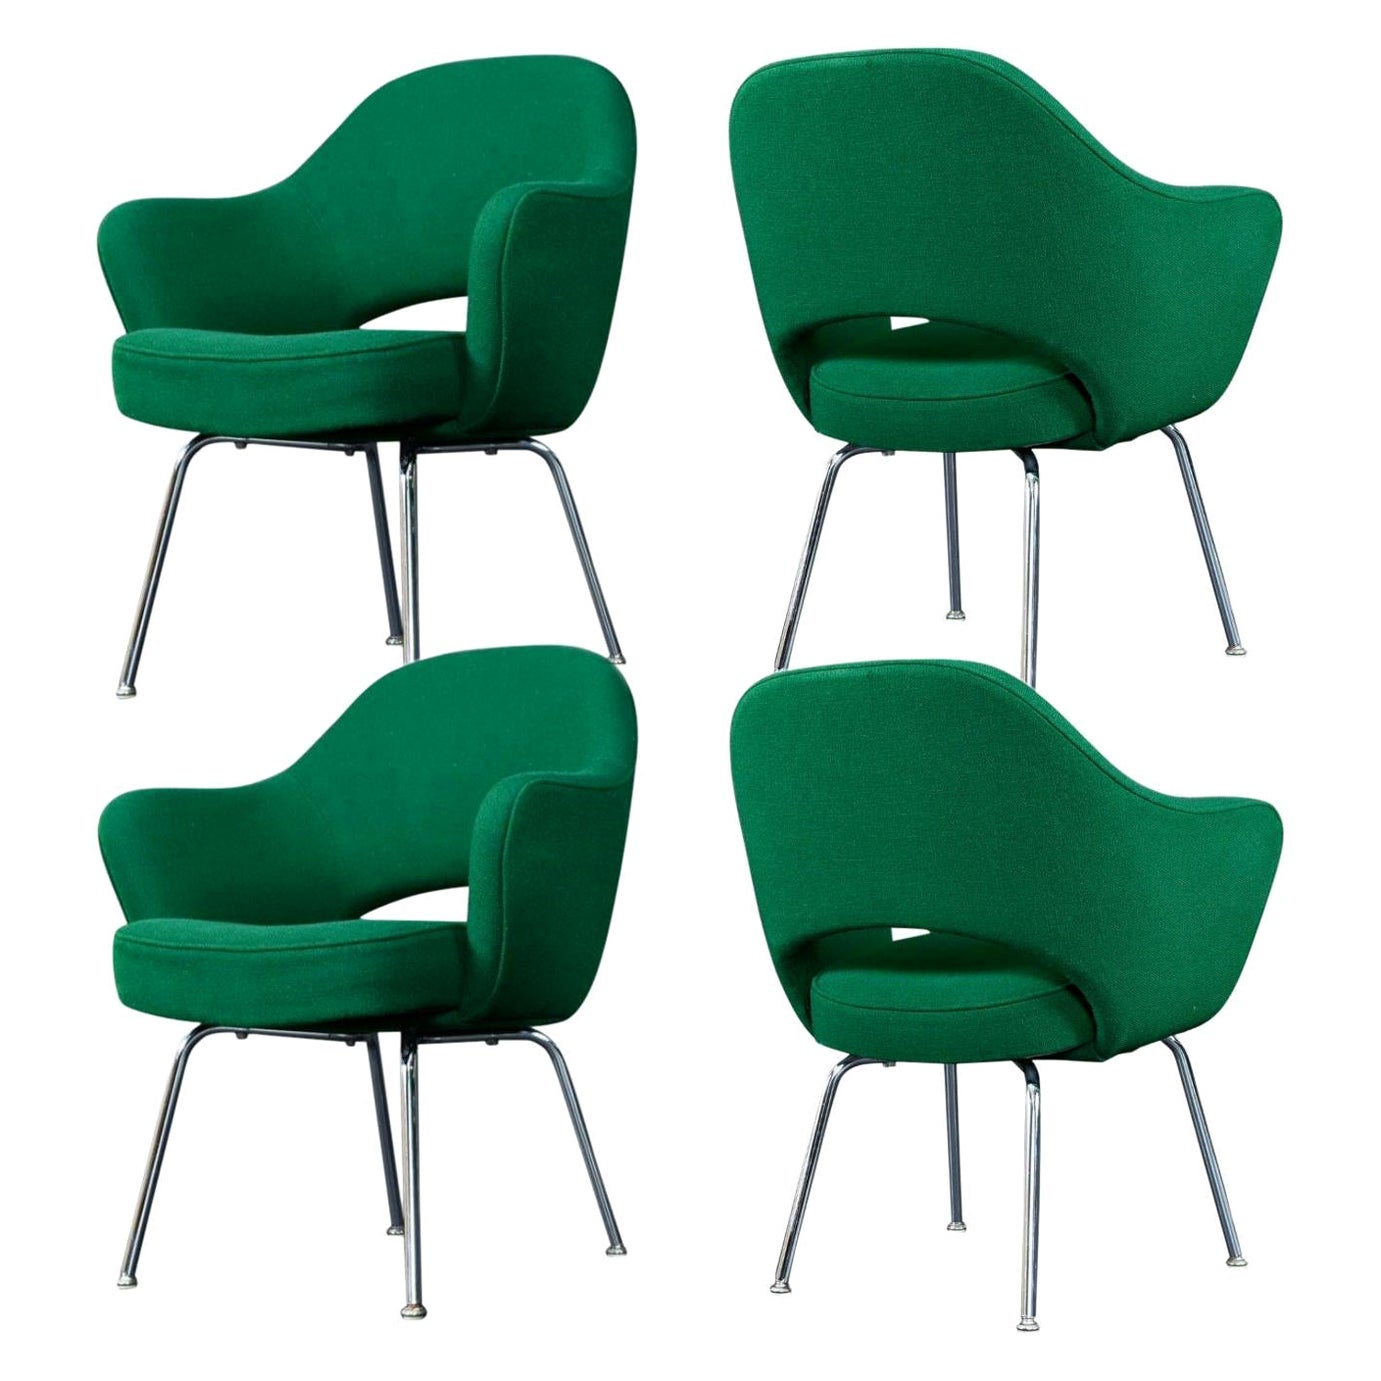 '4' Emerald Green Eero Saarinen for Knoll Executive Armchairs